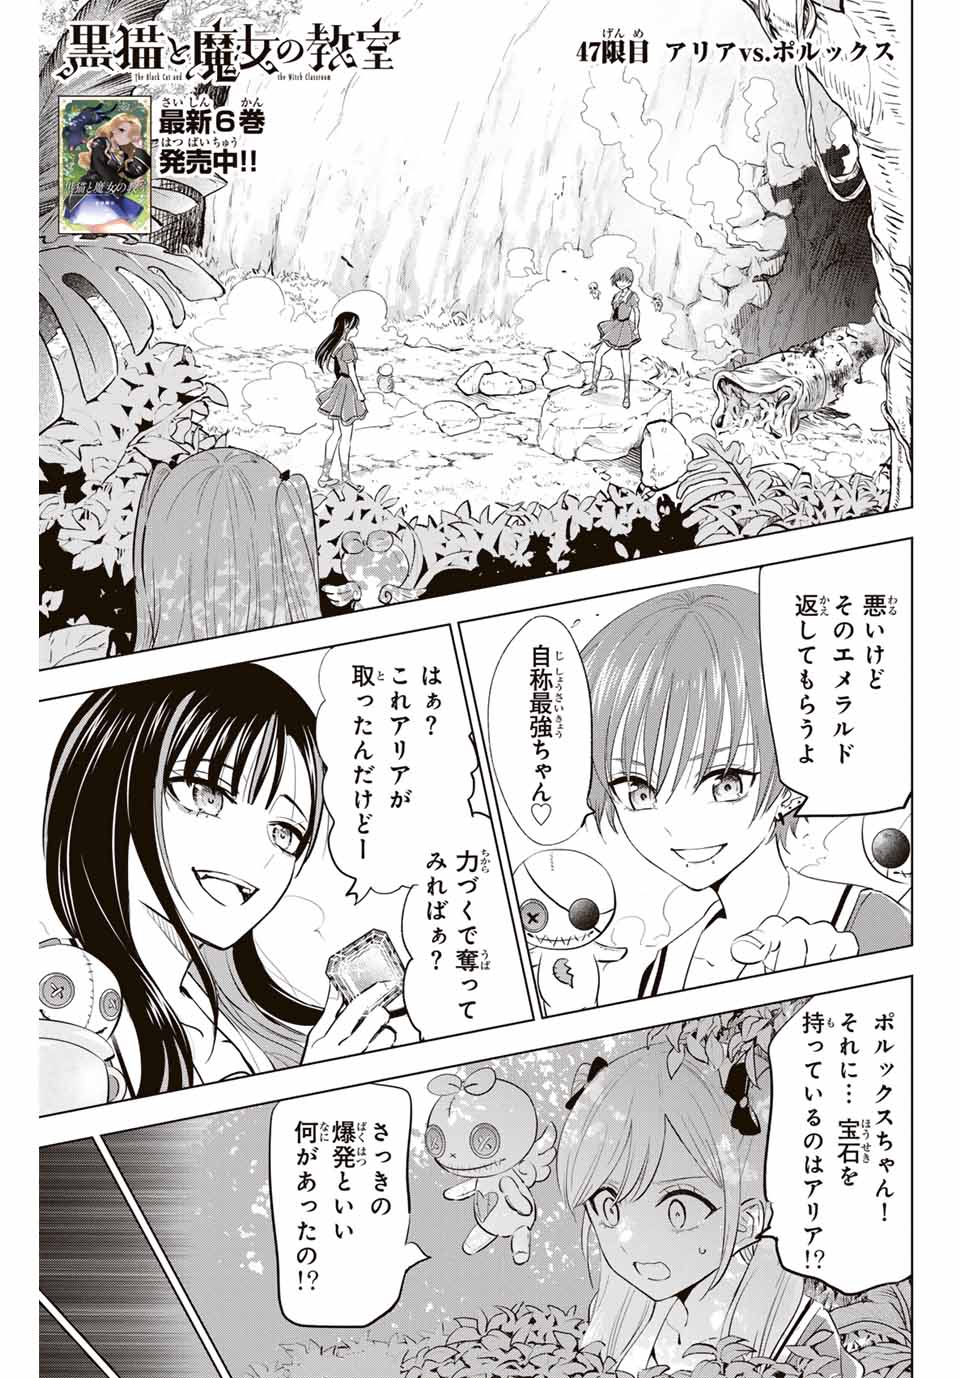 Kuroneko to Majo no Kyoushitsu - Chapter 47 - Page 1